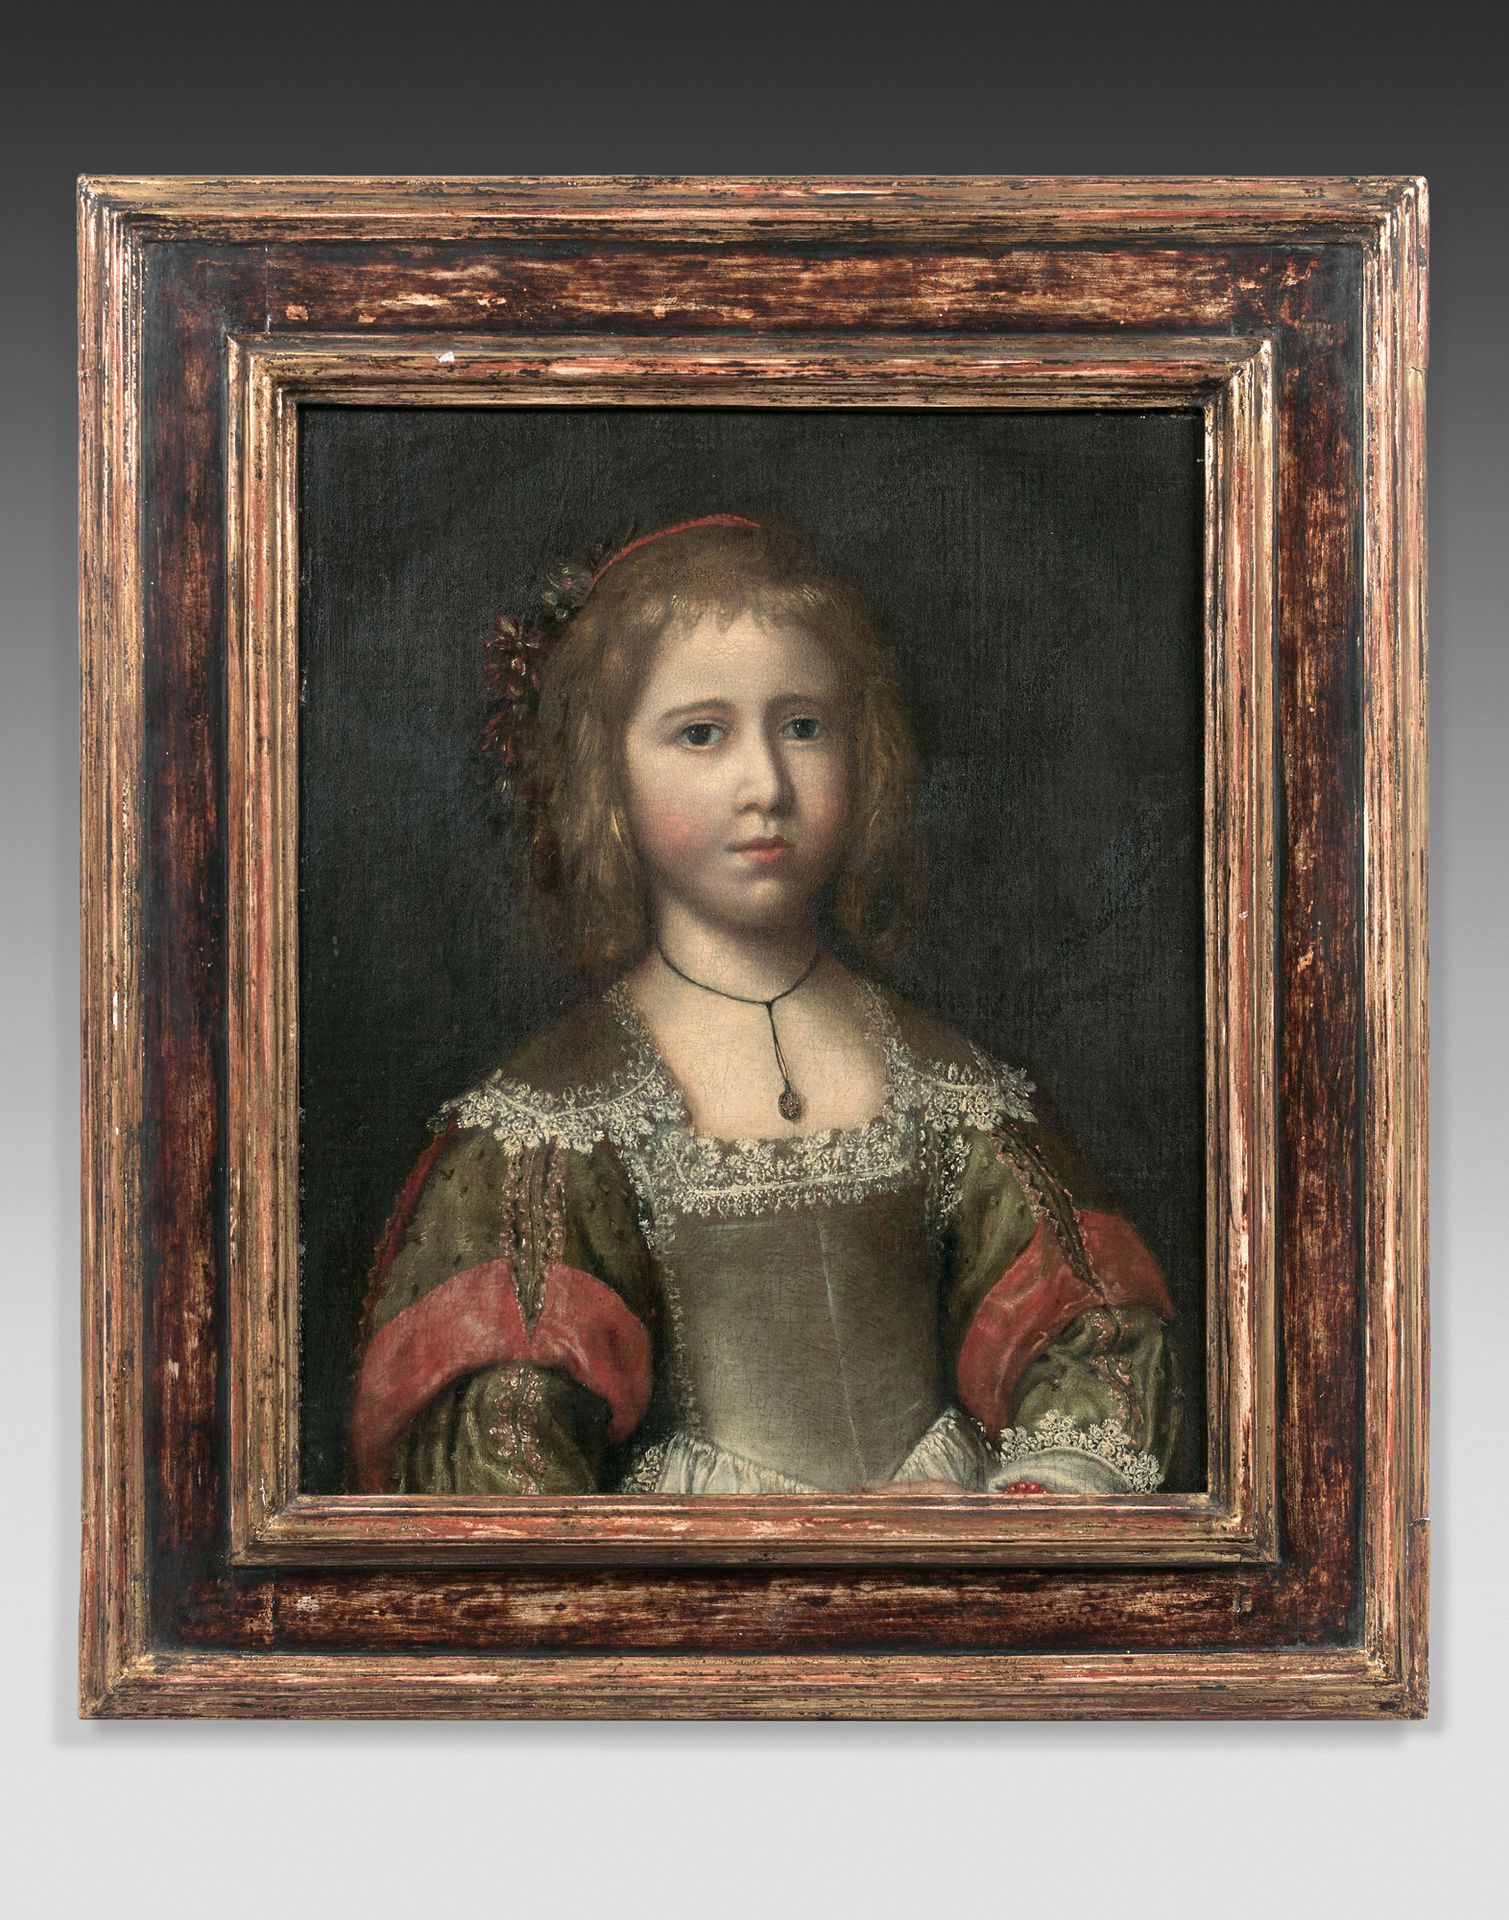 École FRANÇAISE vers 1650 Ritratto di ragazza
Tela.
53 x 43,5 cm